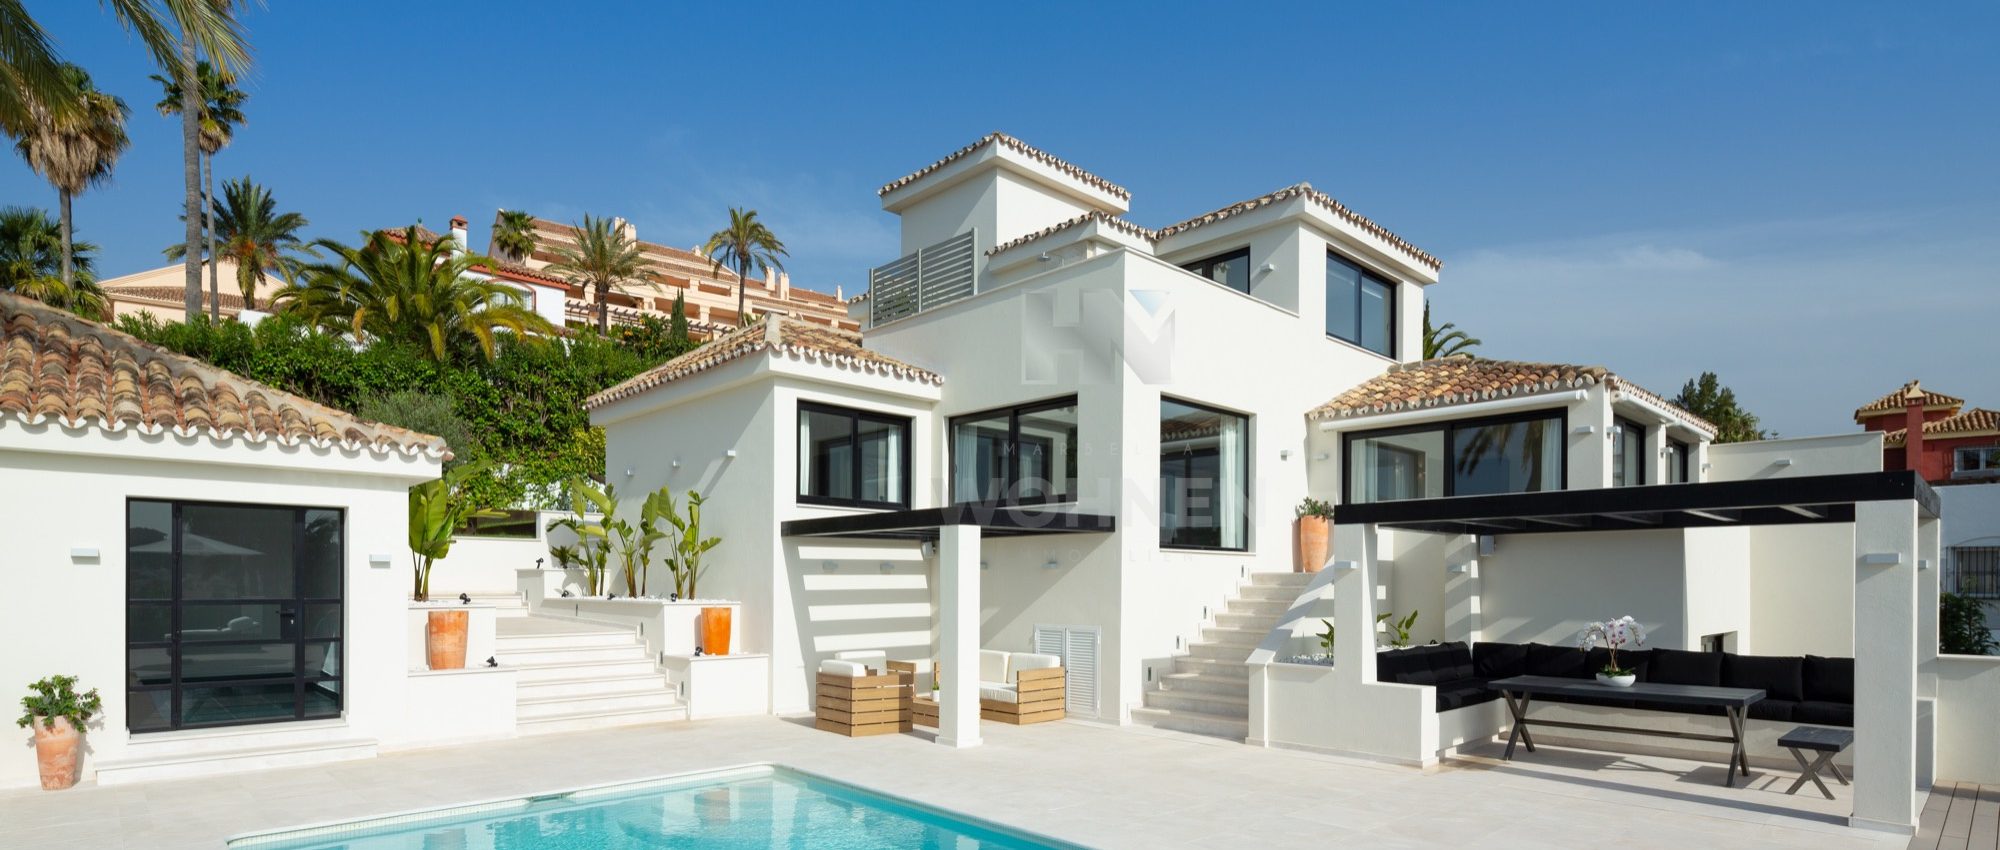 Komplett renovierte Villa im Los Naranjos Hill Club mit atemberaubende Aussichten auf das Meer